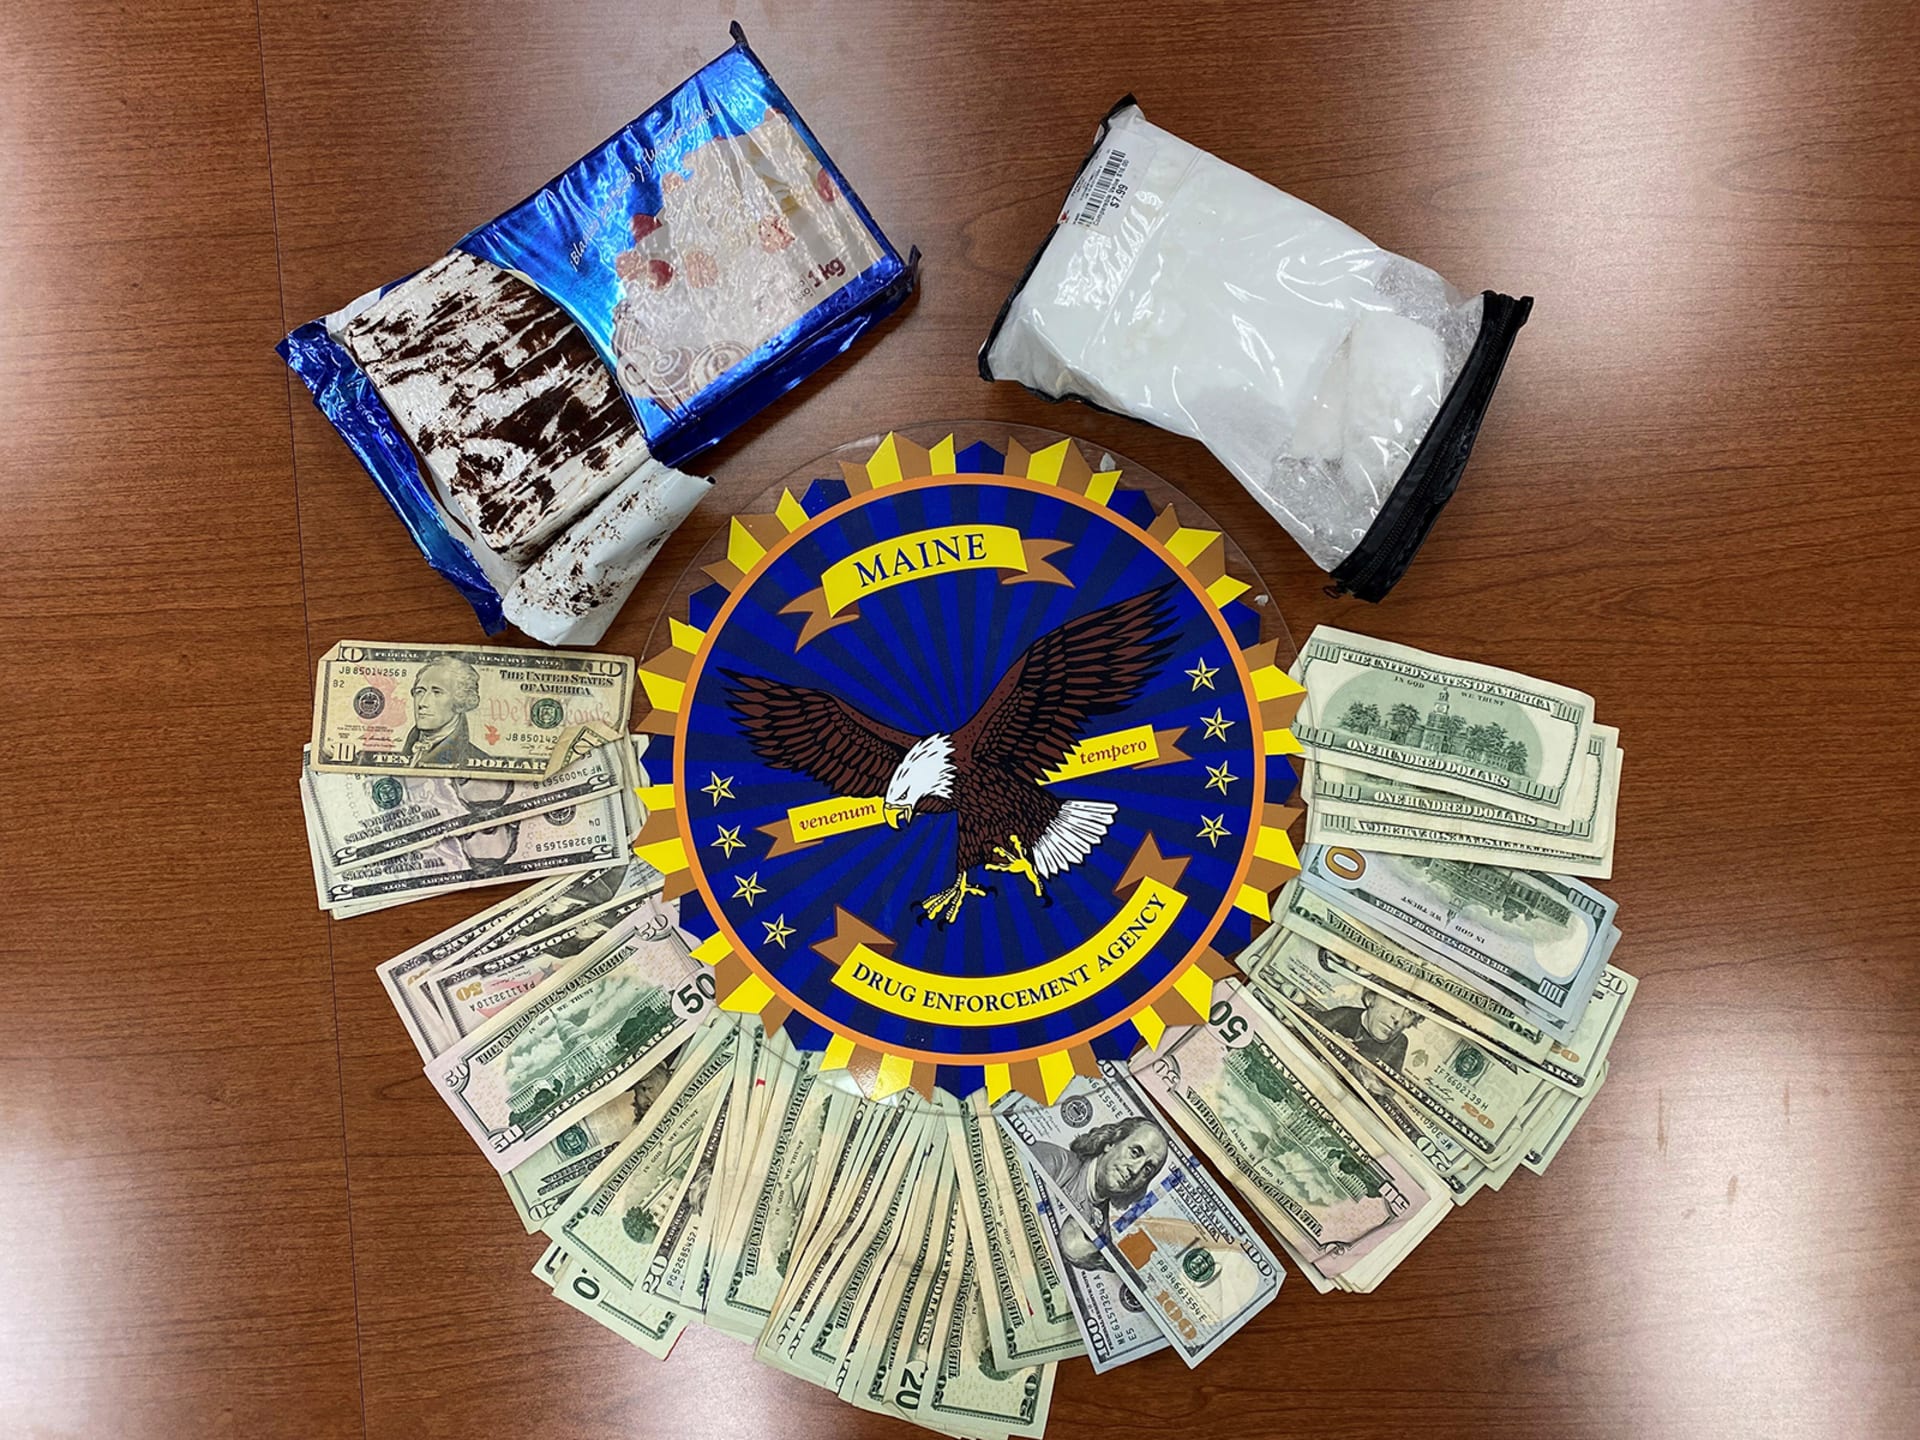 Pár ve voze převážel čtyři kilogramy kokainu a hotovost, pravděpodobně z nelegálního prodeje drog.